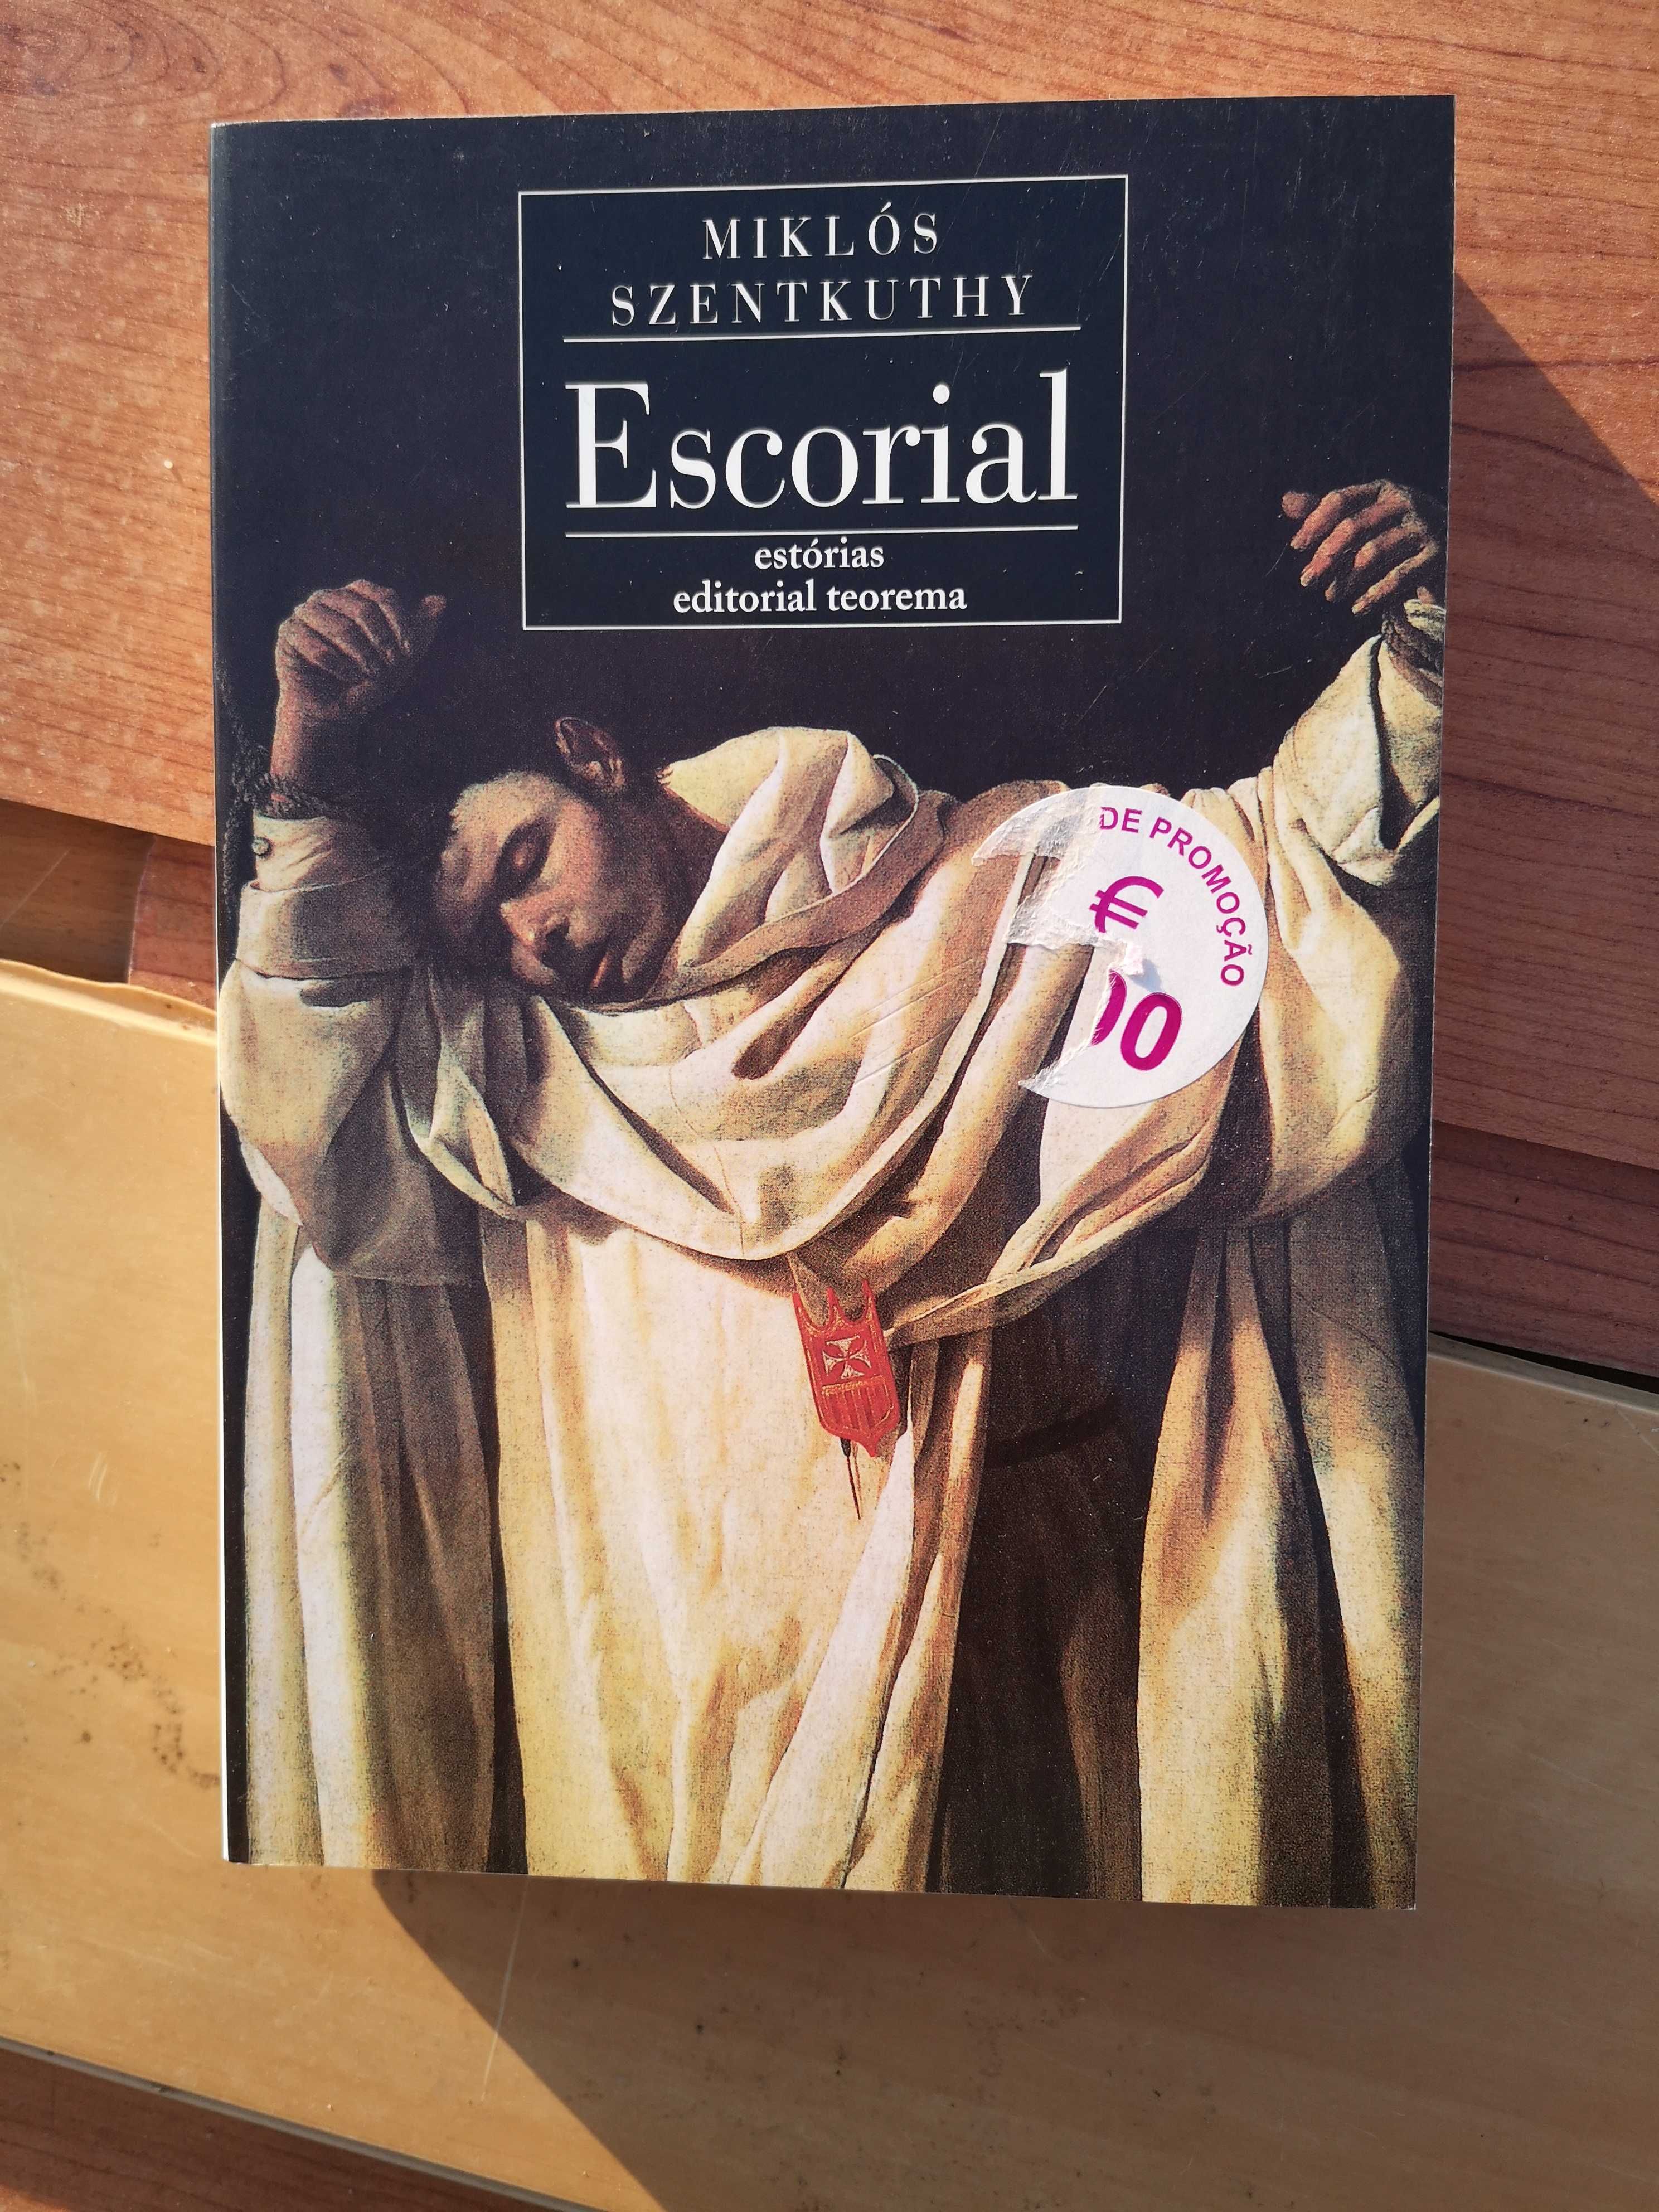 Escorial – Miklós Szentkuthy